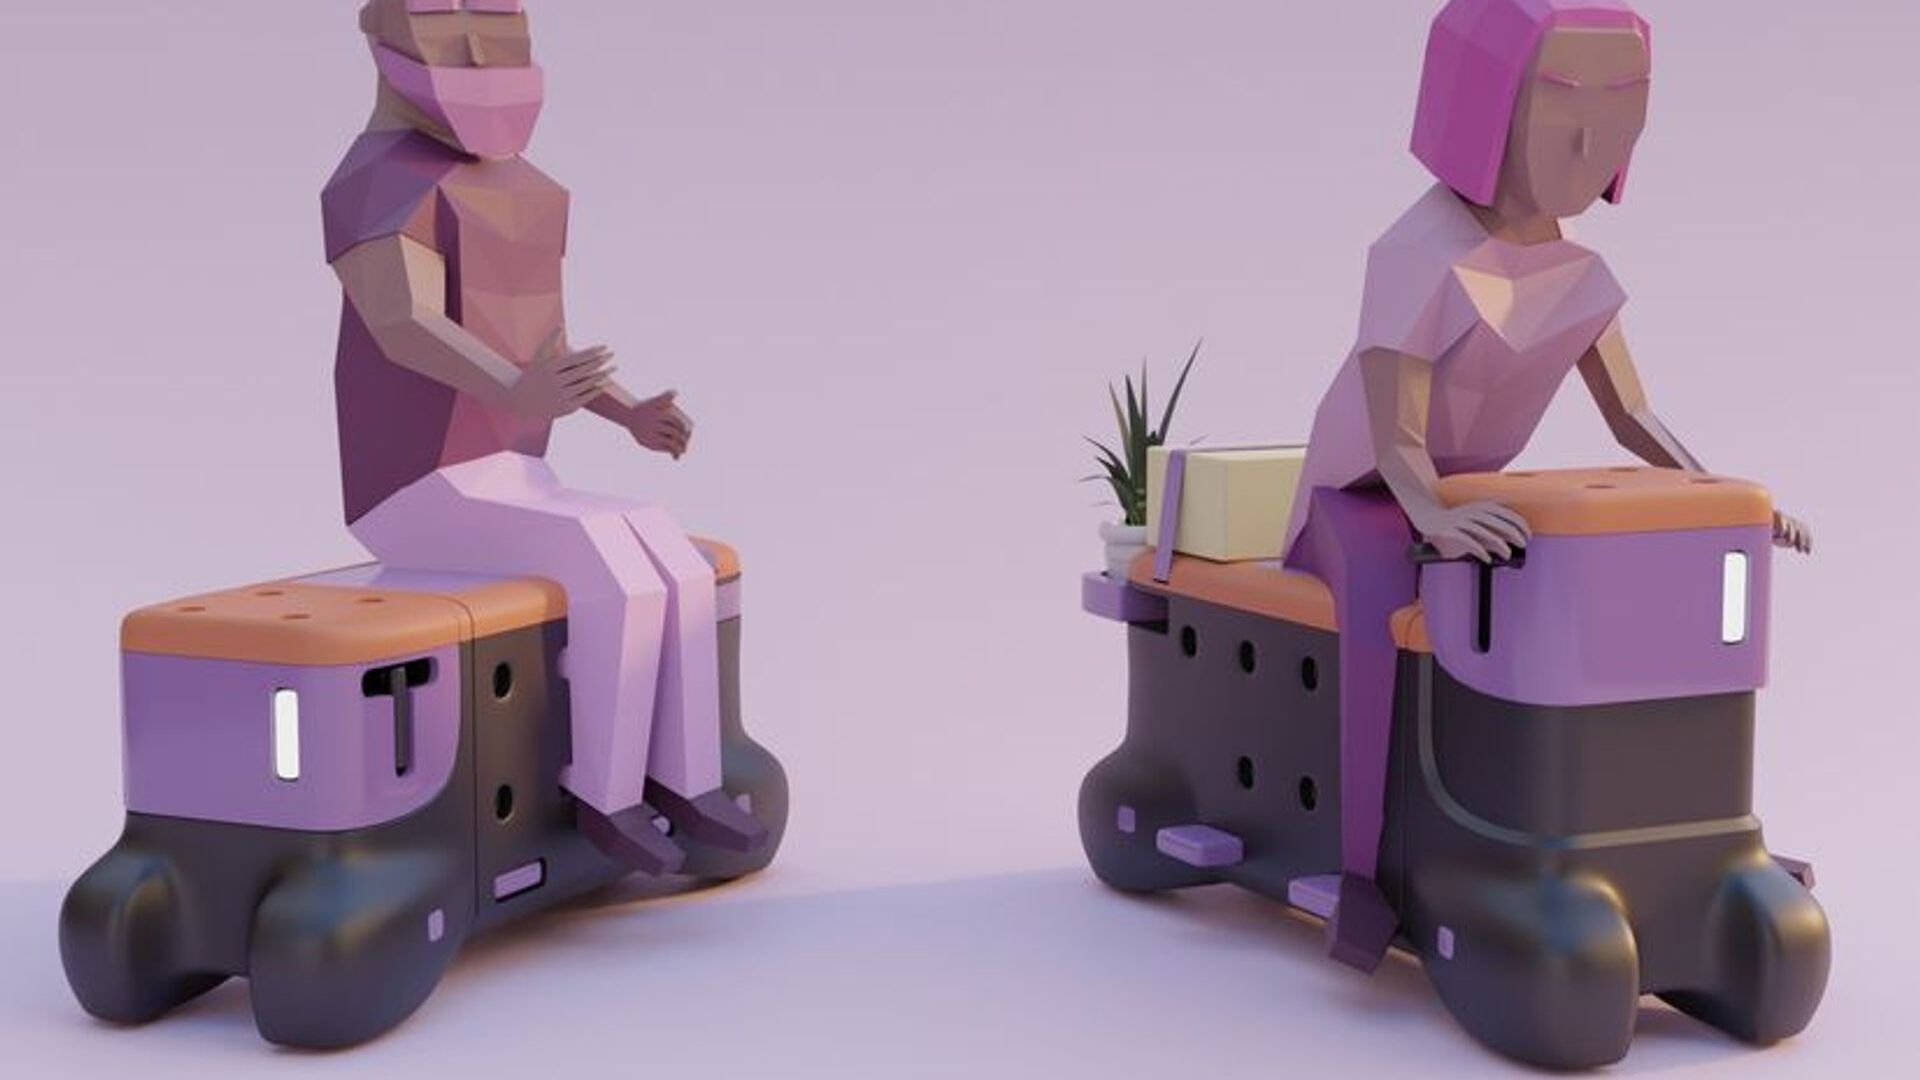 'TOD' è la panchina-scooter ideata dagli studenti di design Corentin Janel e Guillaume Innocenti